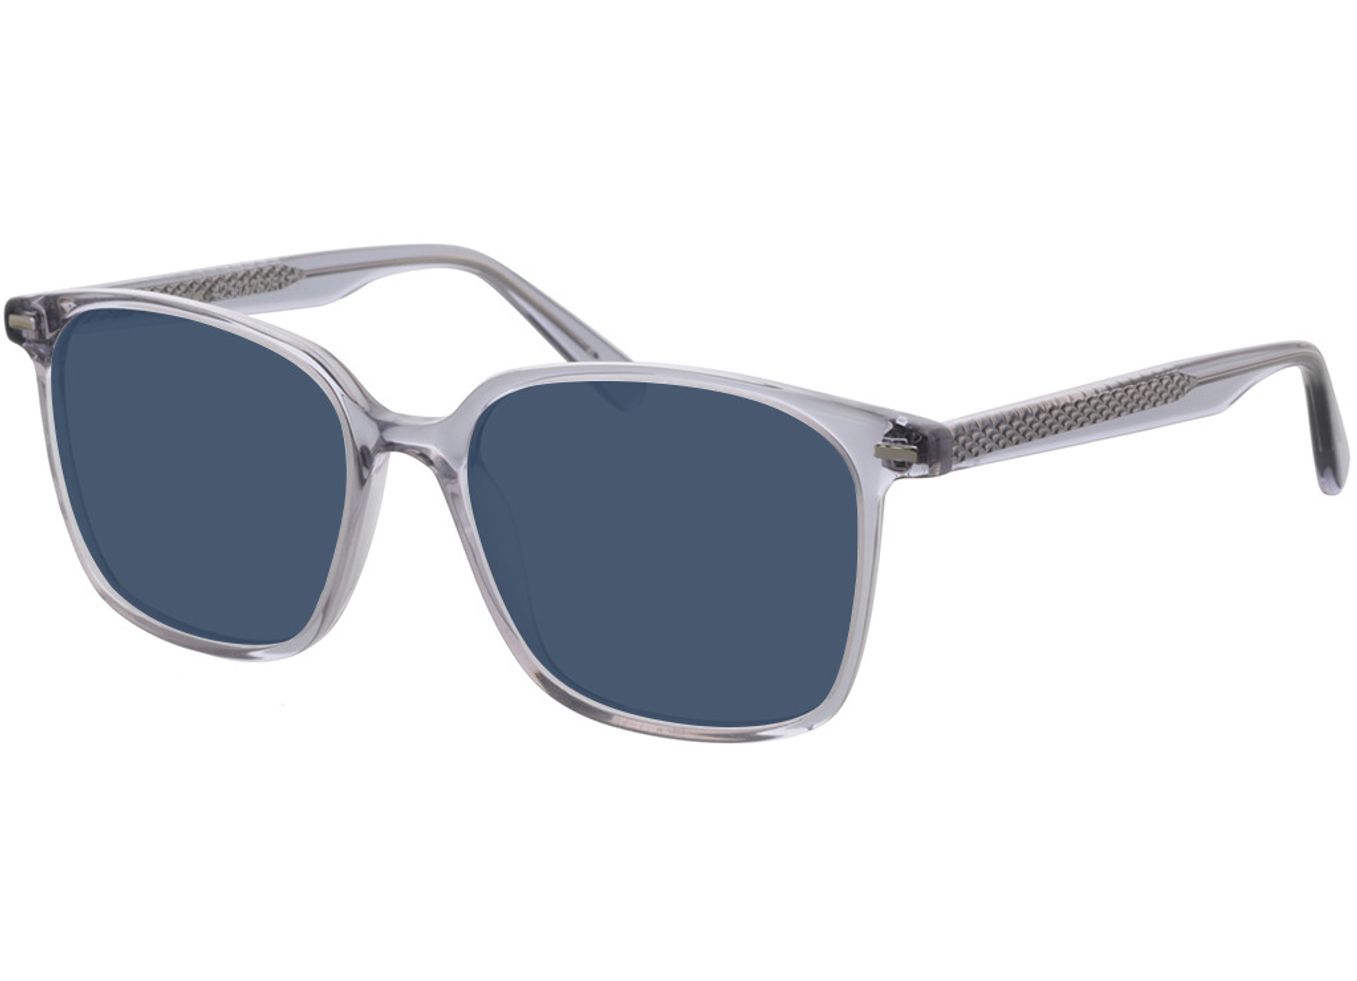 Taylor - grau Sonnenbrille ohne Sehstärke, Vollrand, Eckig von Brille24 Collection